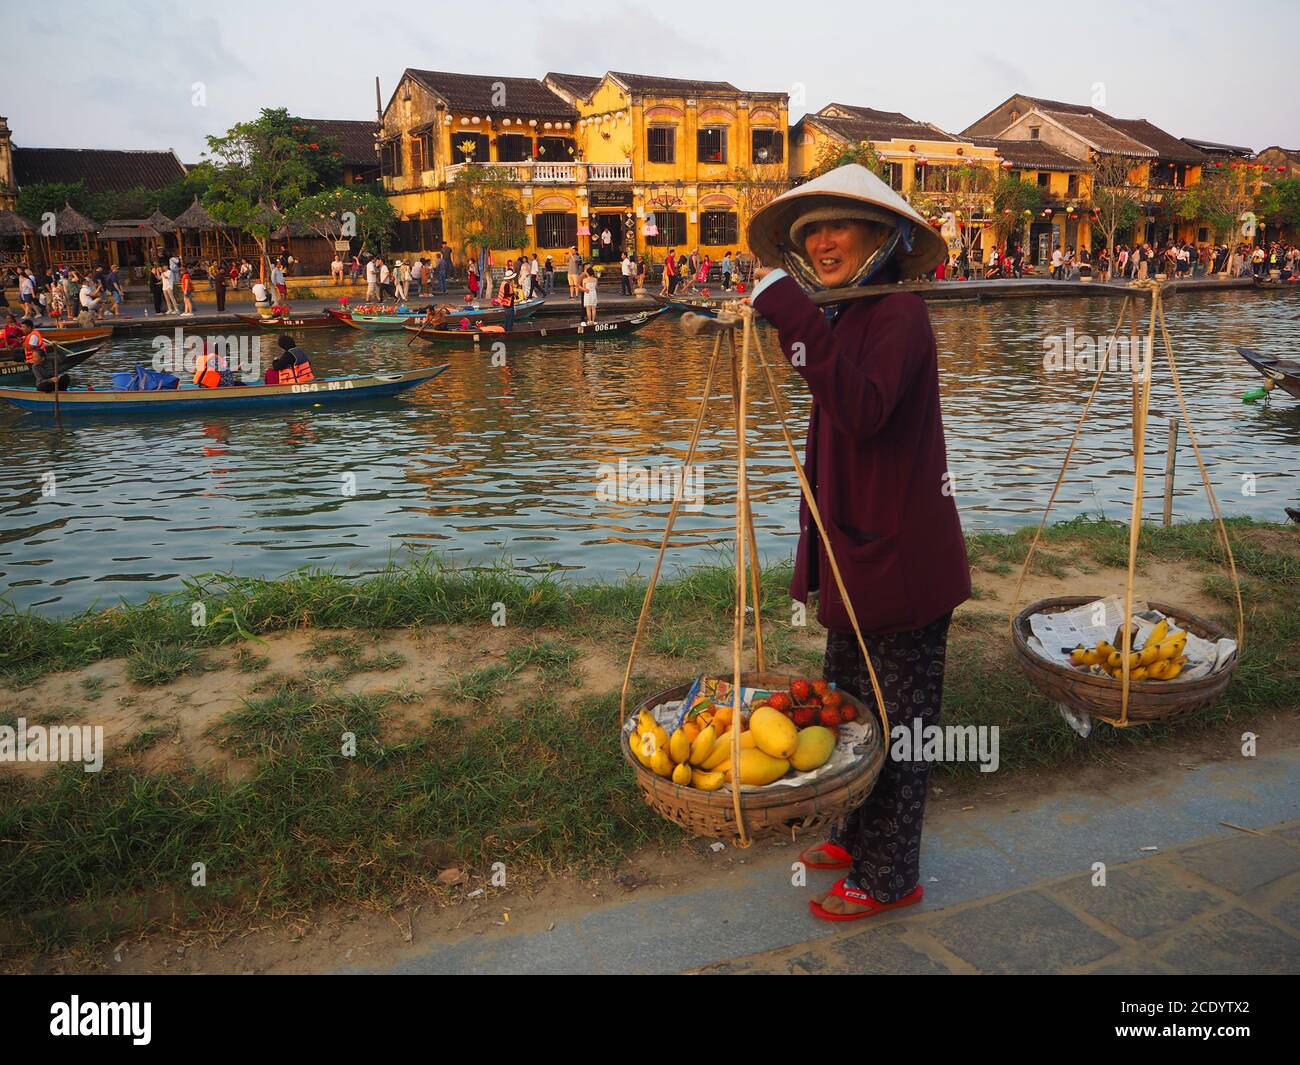 Un vendeur de fruits vietnamien sur les rives de la rivière Thu bon, Hoi an, province de Quang Nam, Vietnam Banque D'Images